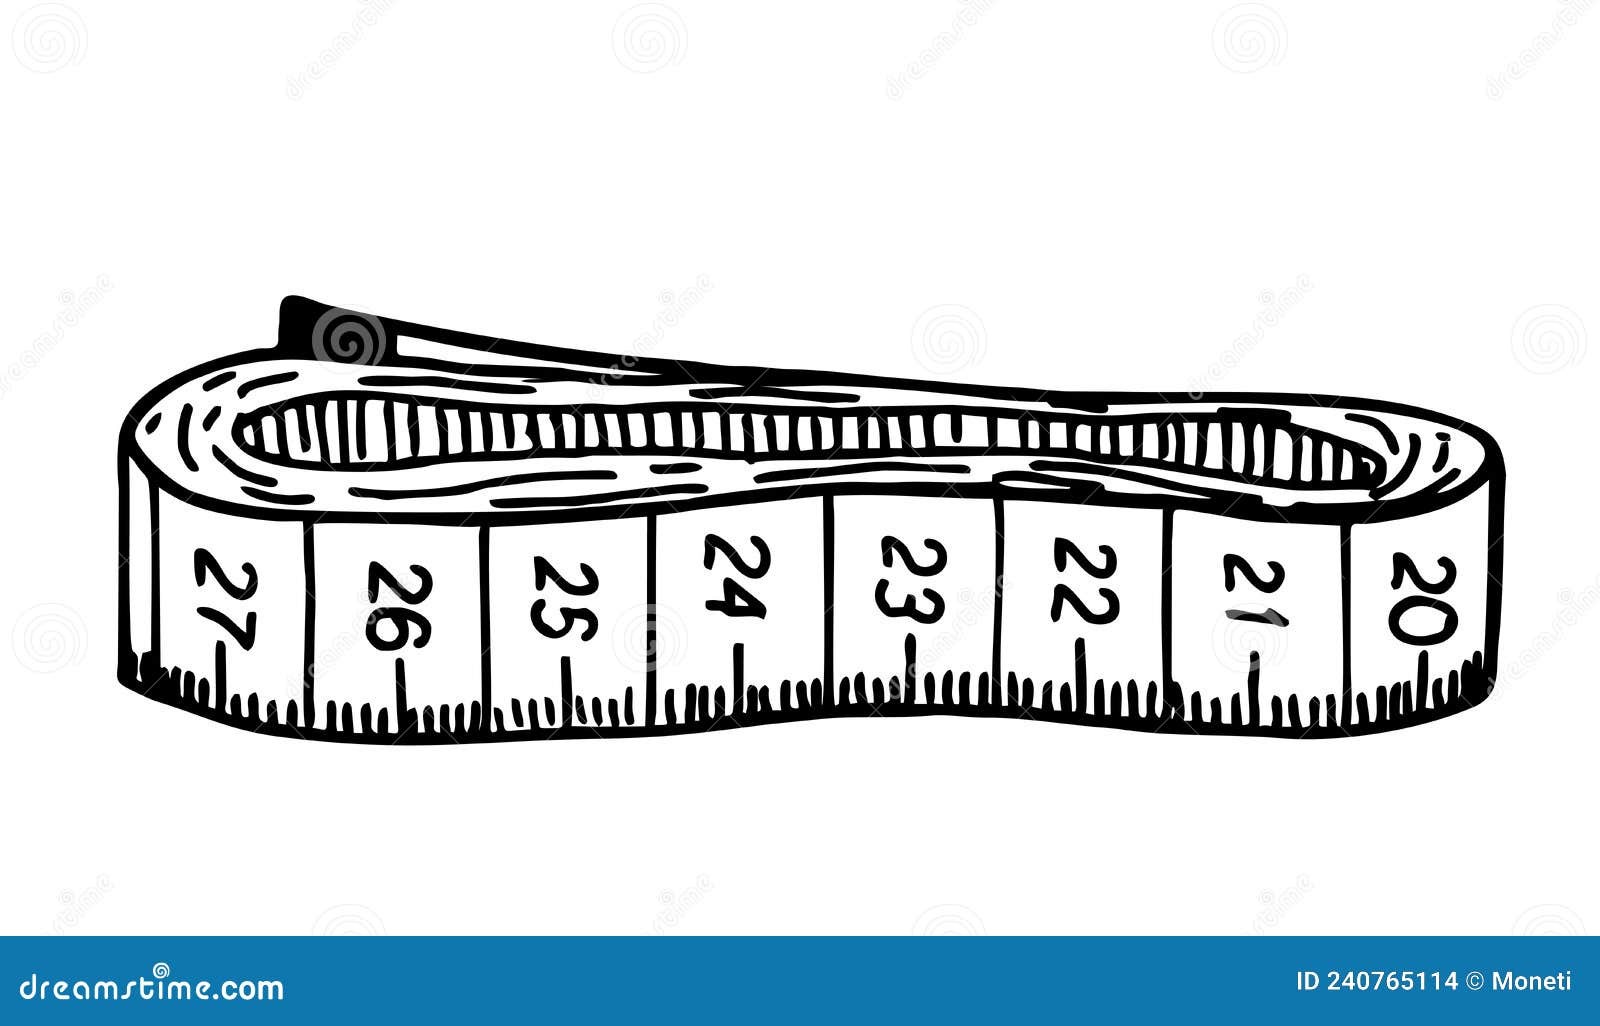 Tape Measure Svg, Measuring Tape, Sewing, Tailor Svg, Ruler, - Inspire  Uplift